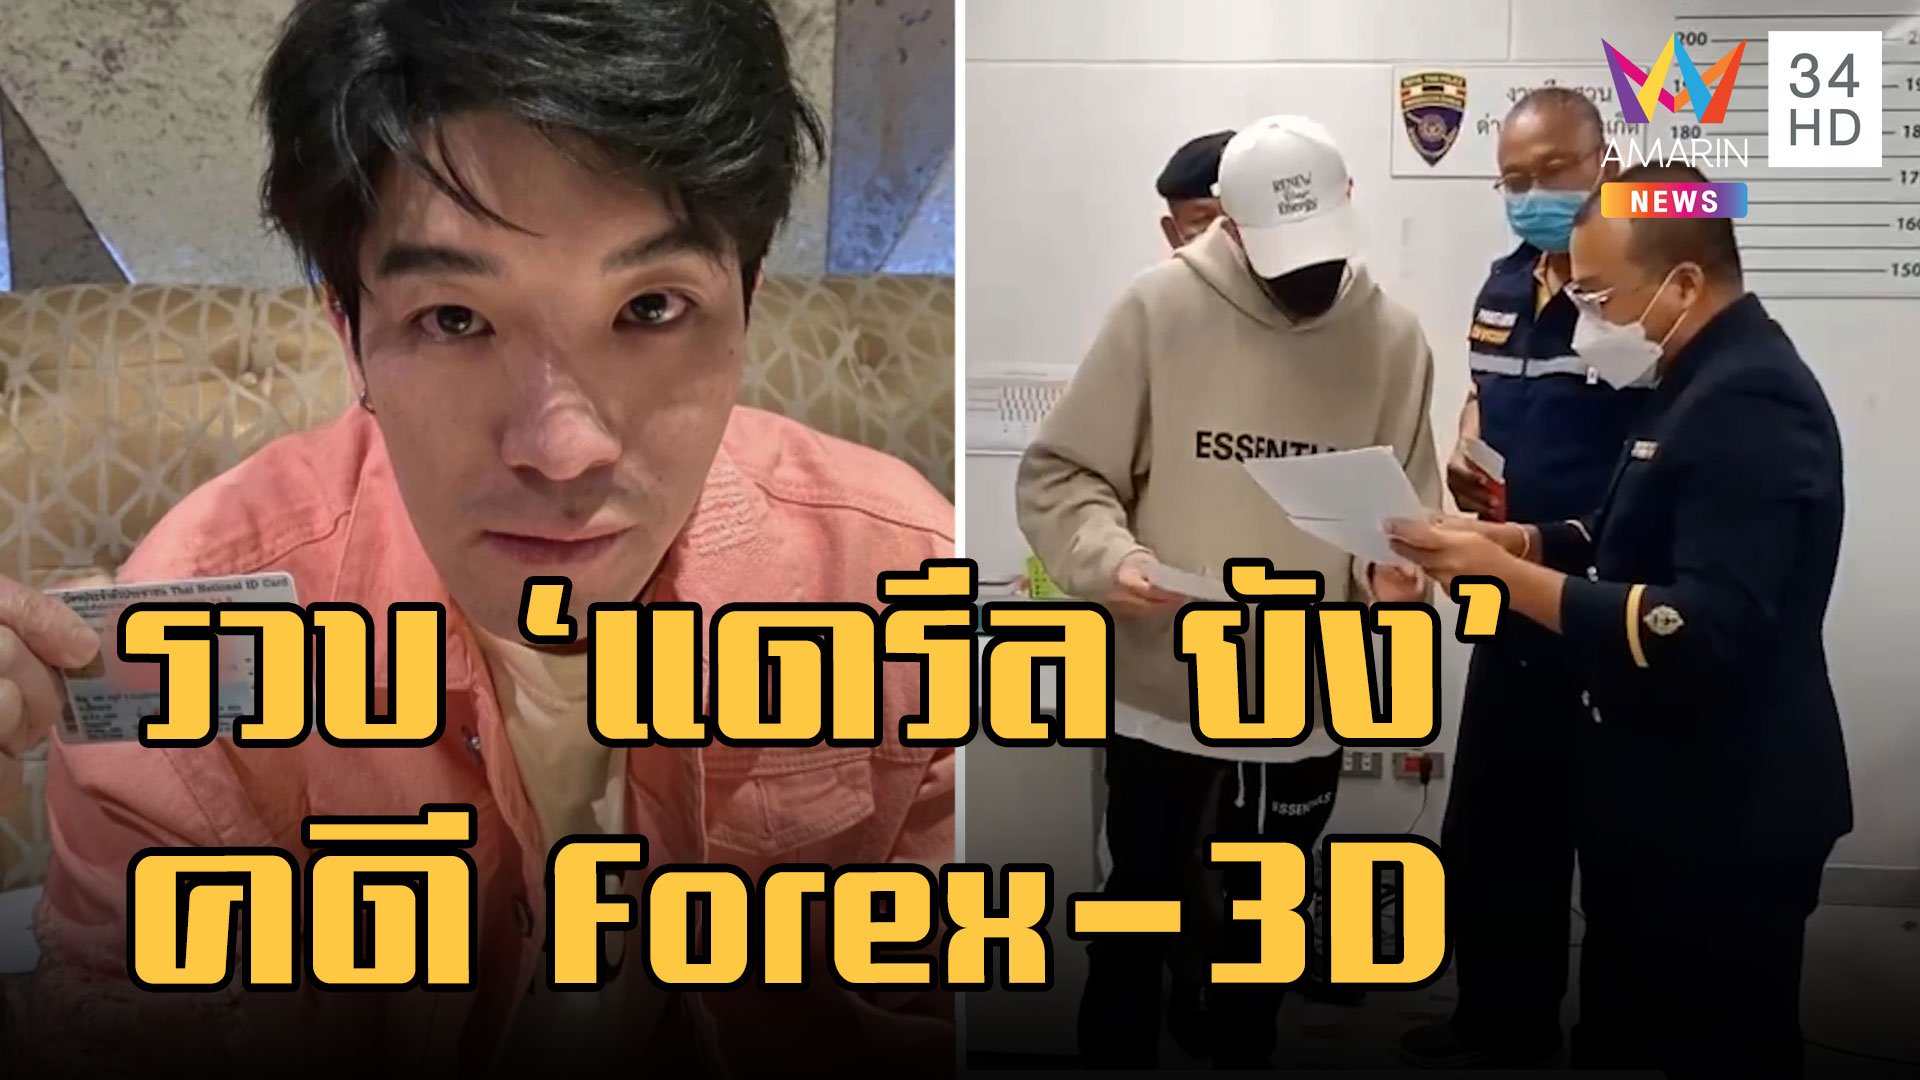 รวบ แดรีล ยัง คาสนามบิน หนีหมายจับคดี Forex-3D | ข่าวอรุณอมรินทร์ | 17 ม.ค. 66 | AMARIN TVHD34